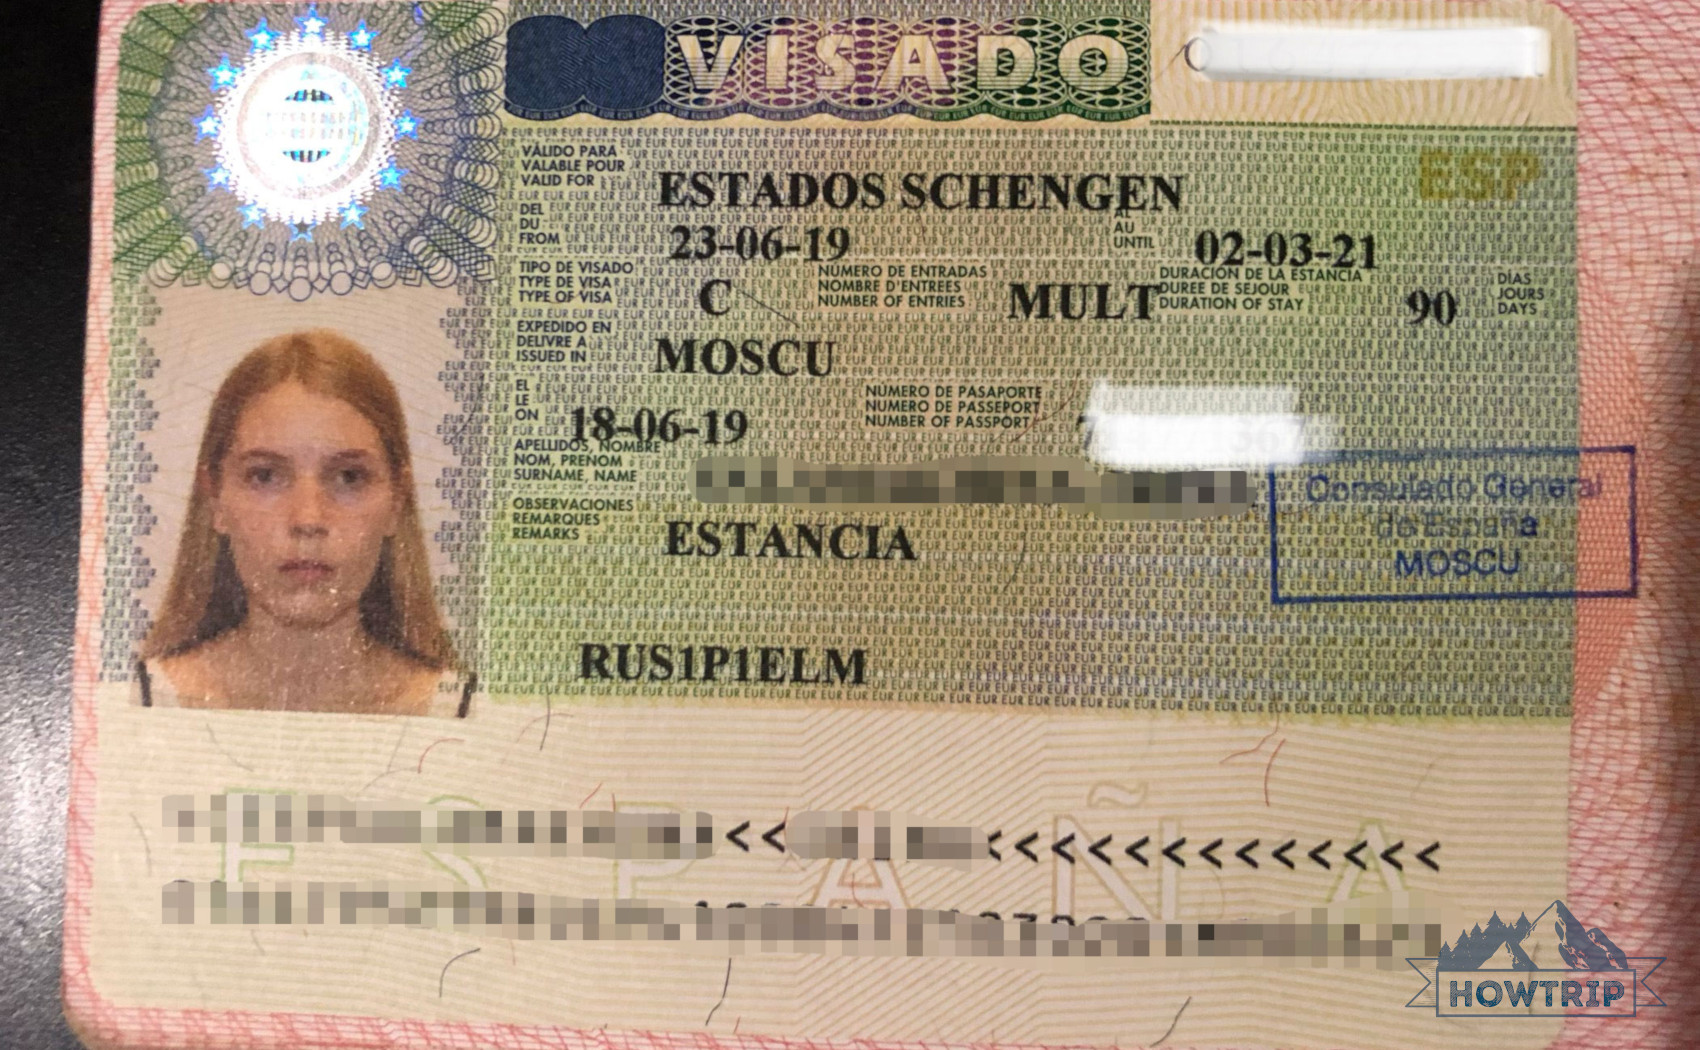 Как получить визу d в испанию пмж доминикана